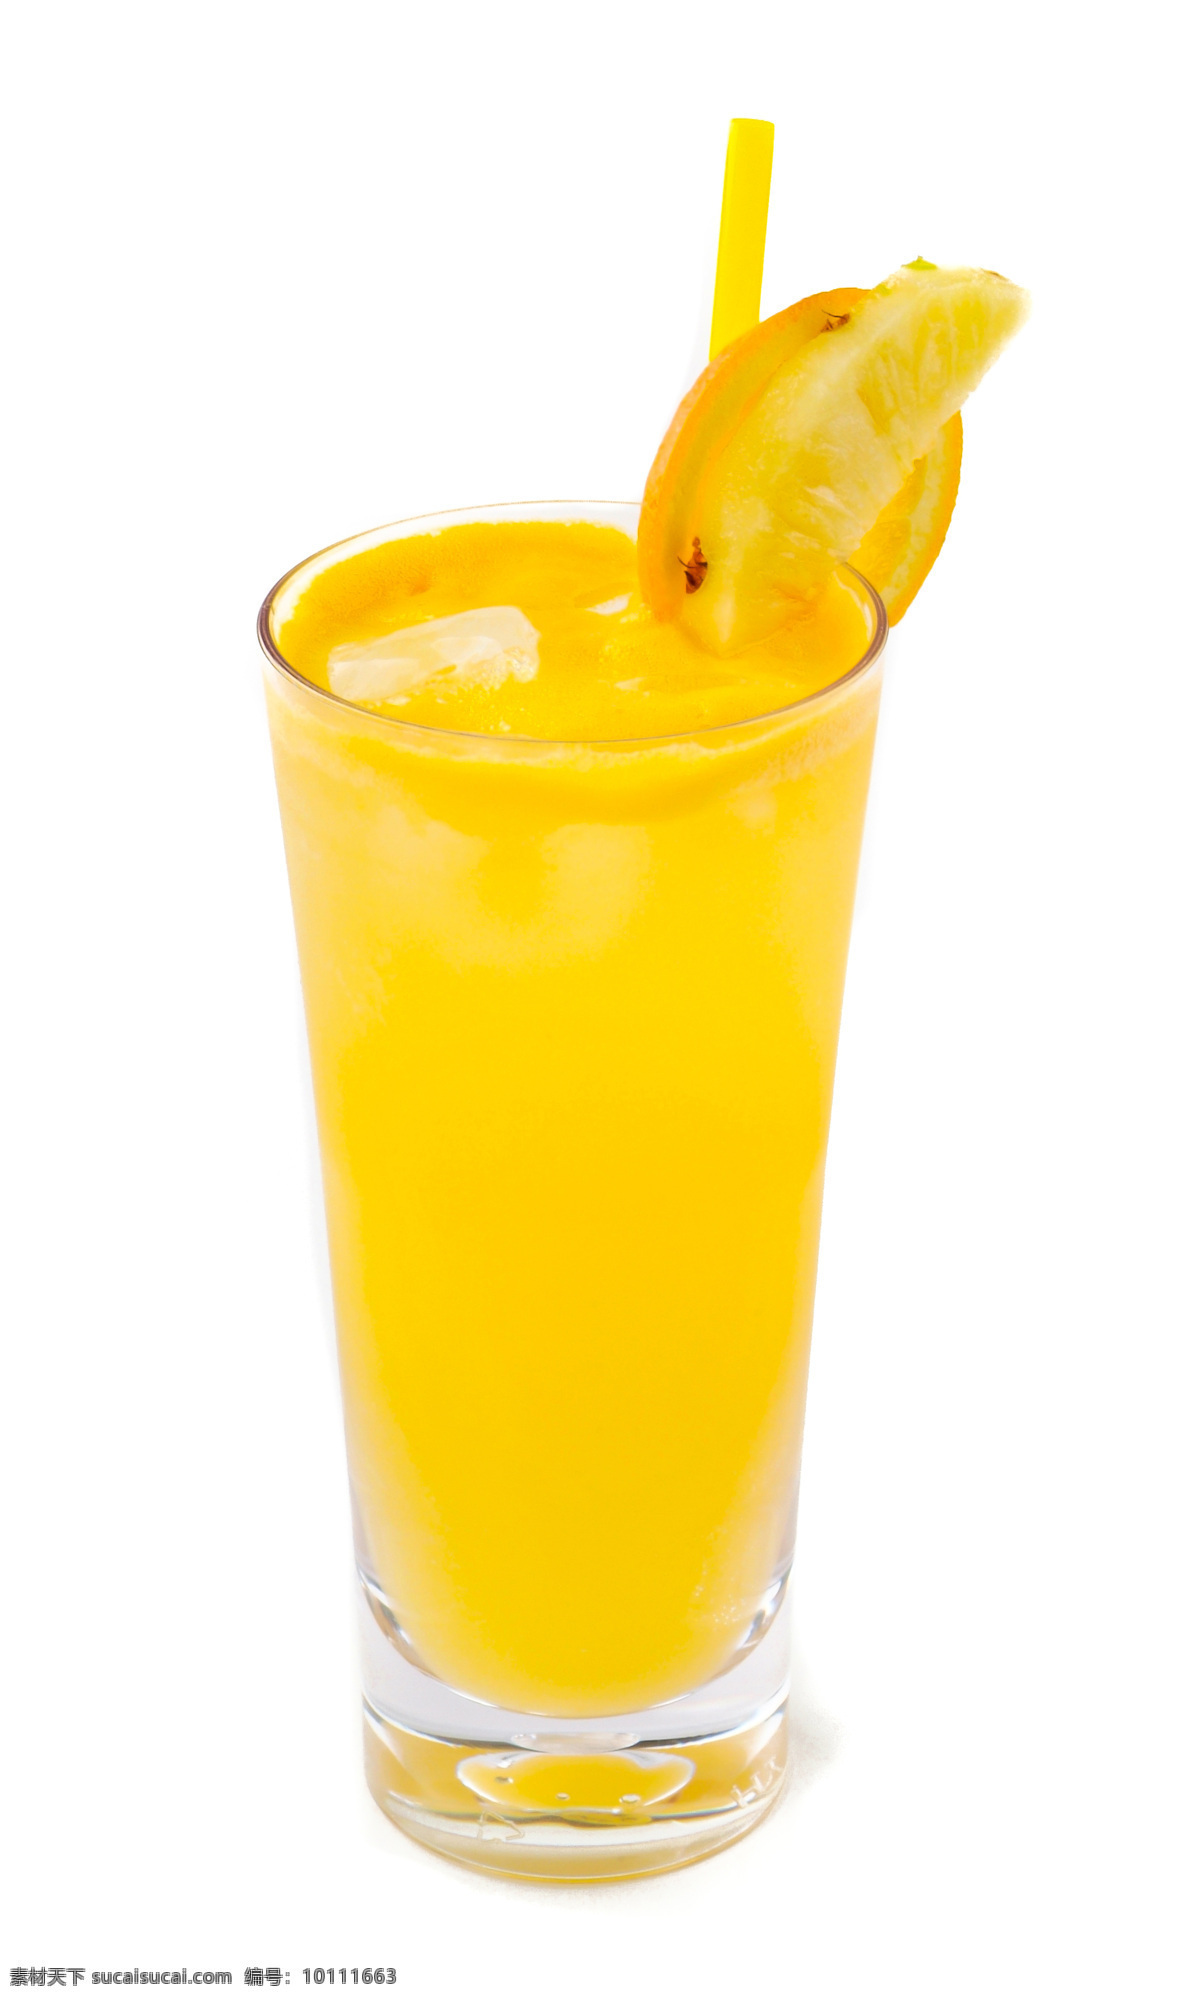 鲜橙汁 鲜榨橙汁 橙汁 果汁 橘子汁 饮品 饮料 鲜榨果汁 果汁饮料 餐饮美食 饮料酒水